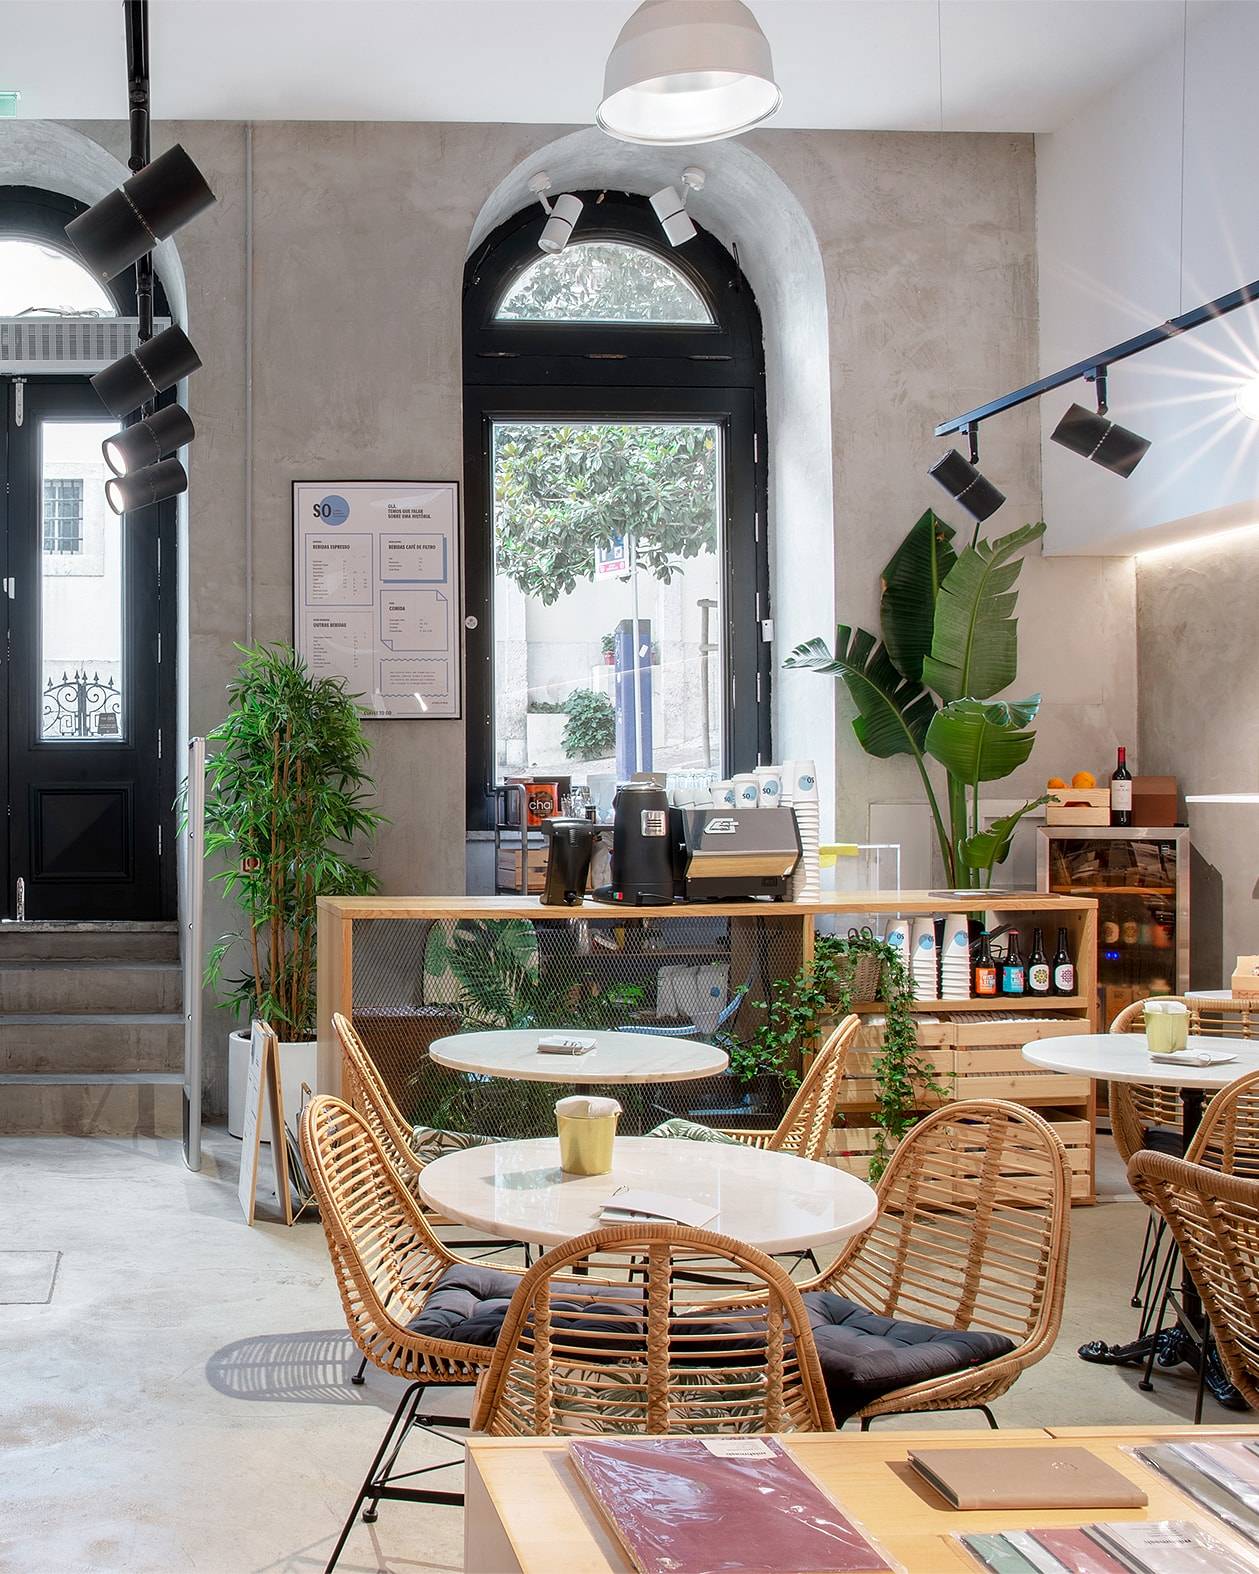 SO Coffee Roasters specialty coffee shop inside maranathahouston in Chiado Lisboa